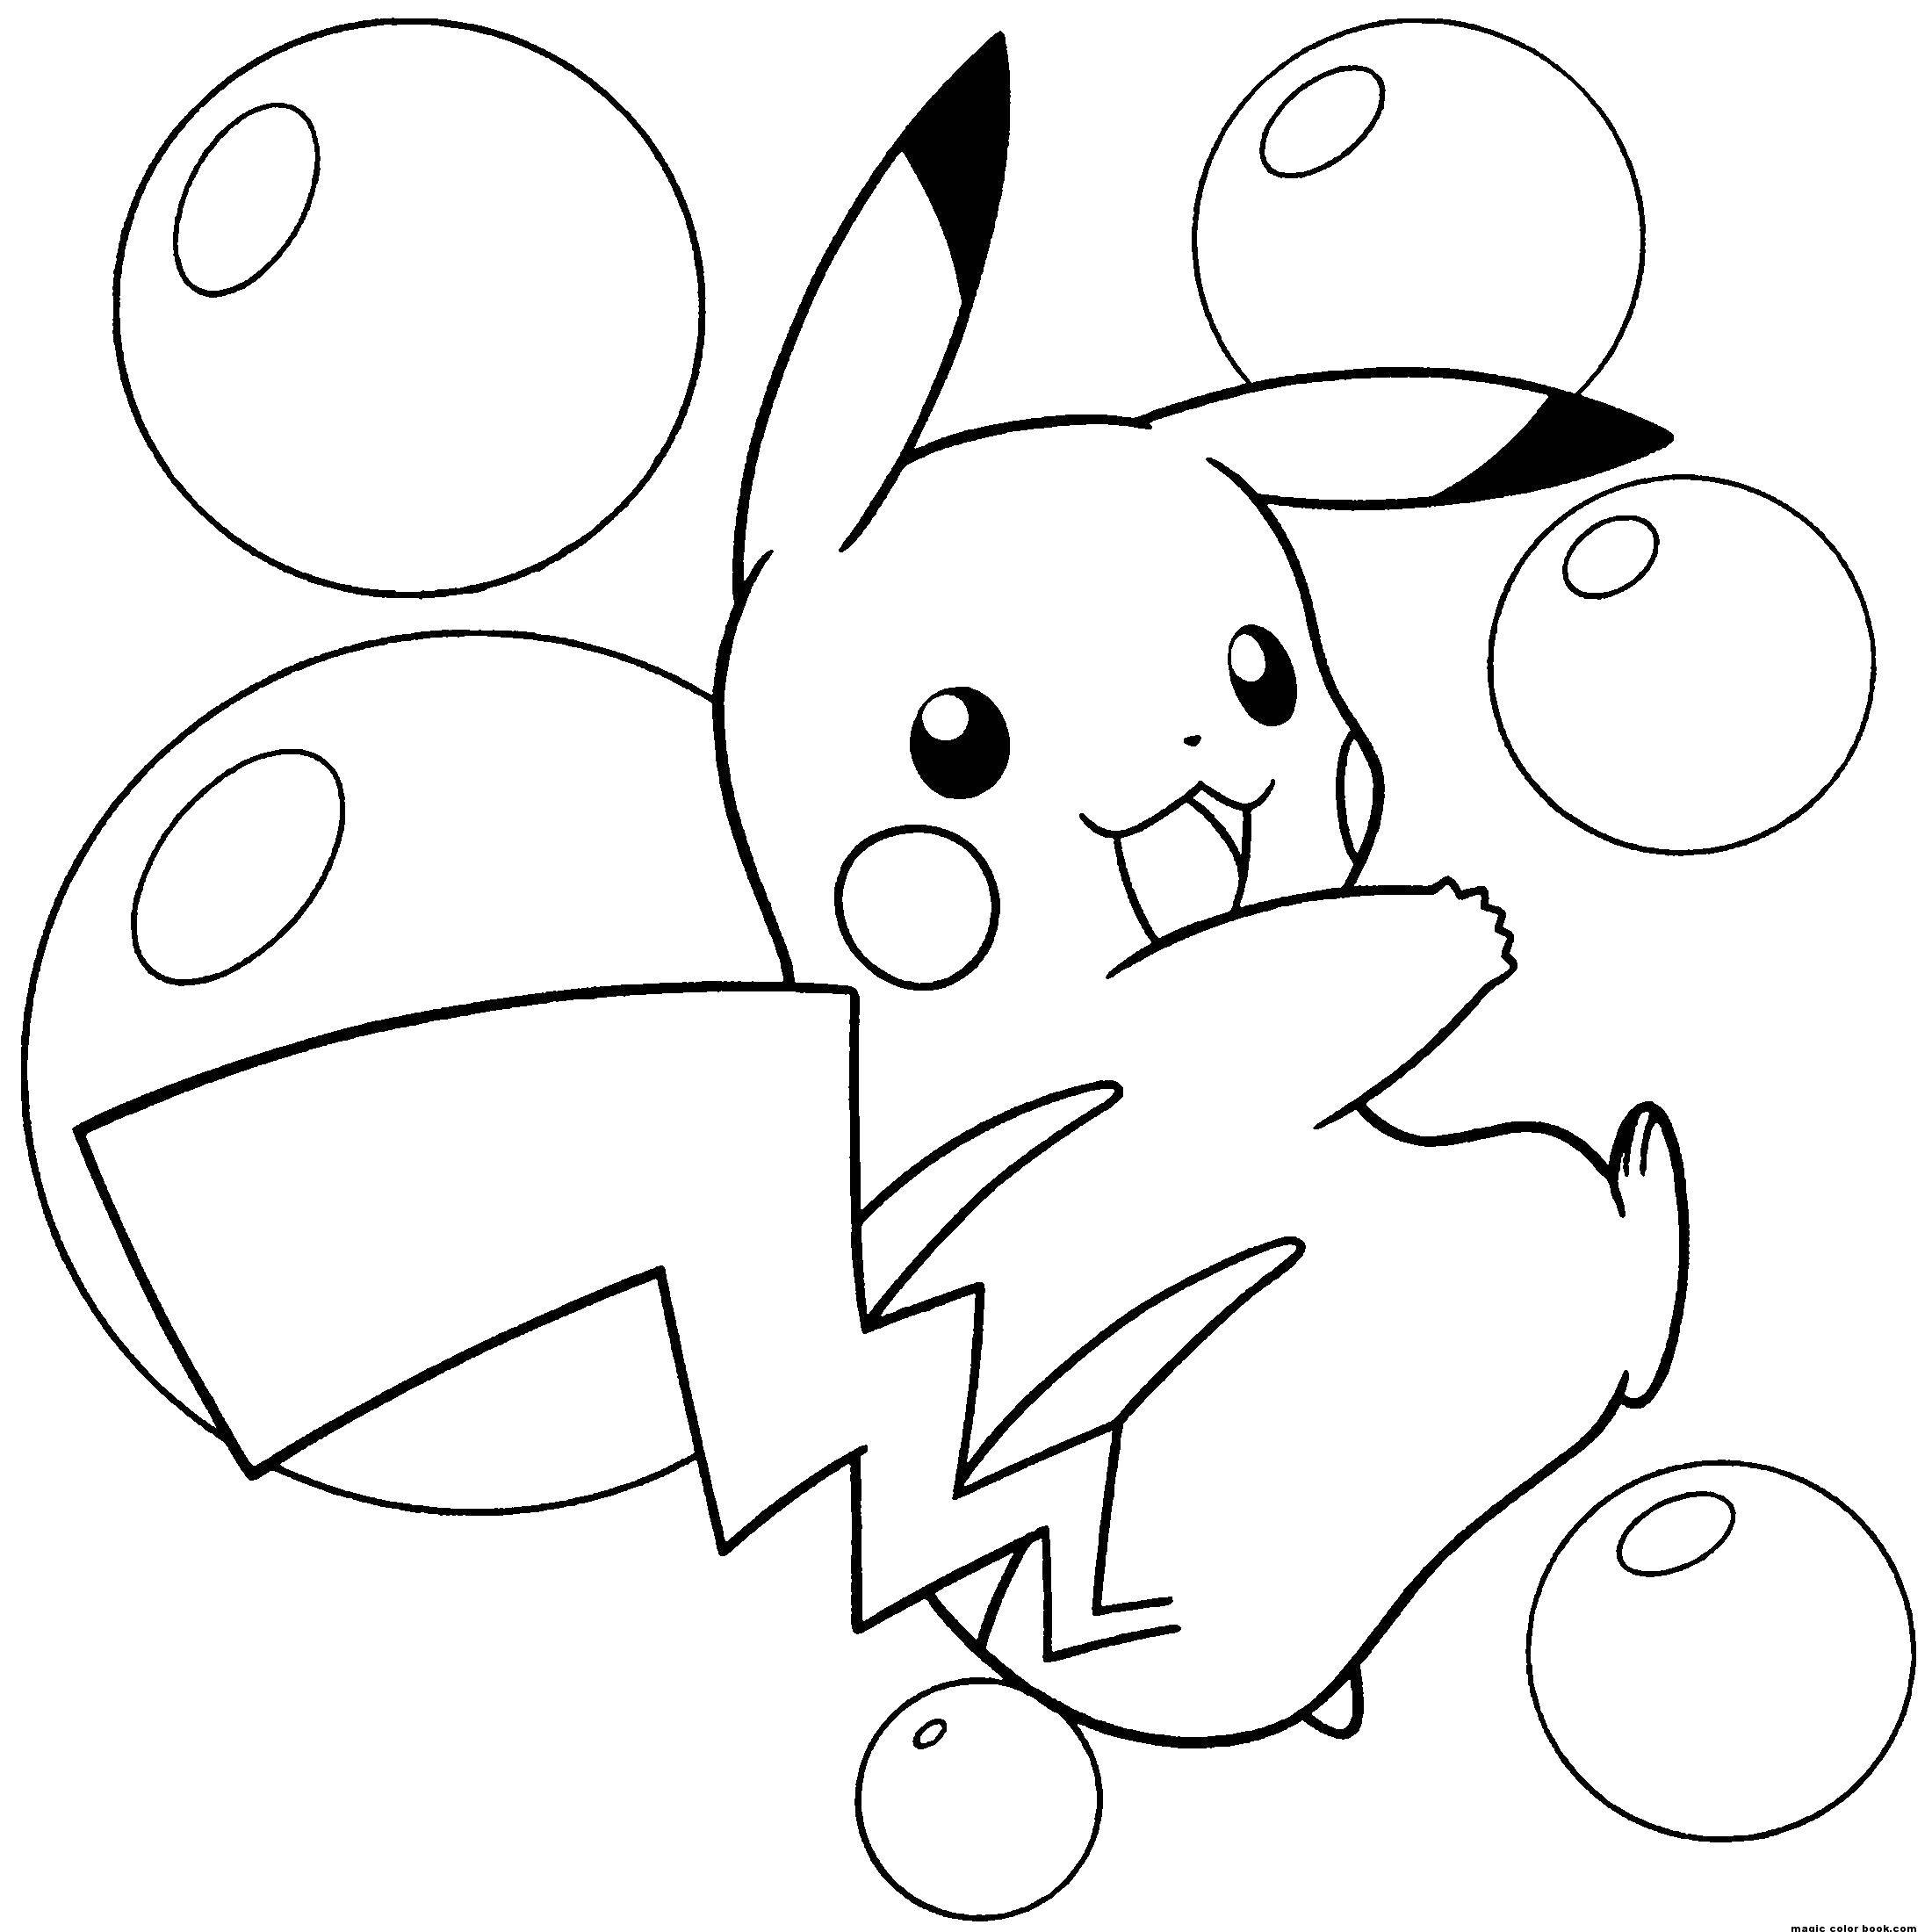 Coloring Pikachu. Category Pokemon. Tags:  pokemon, cartoons, anime.